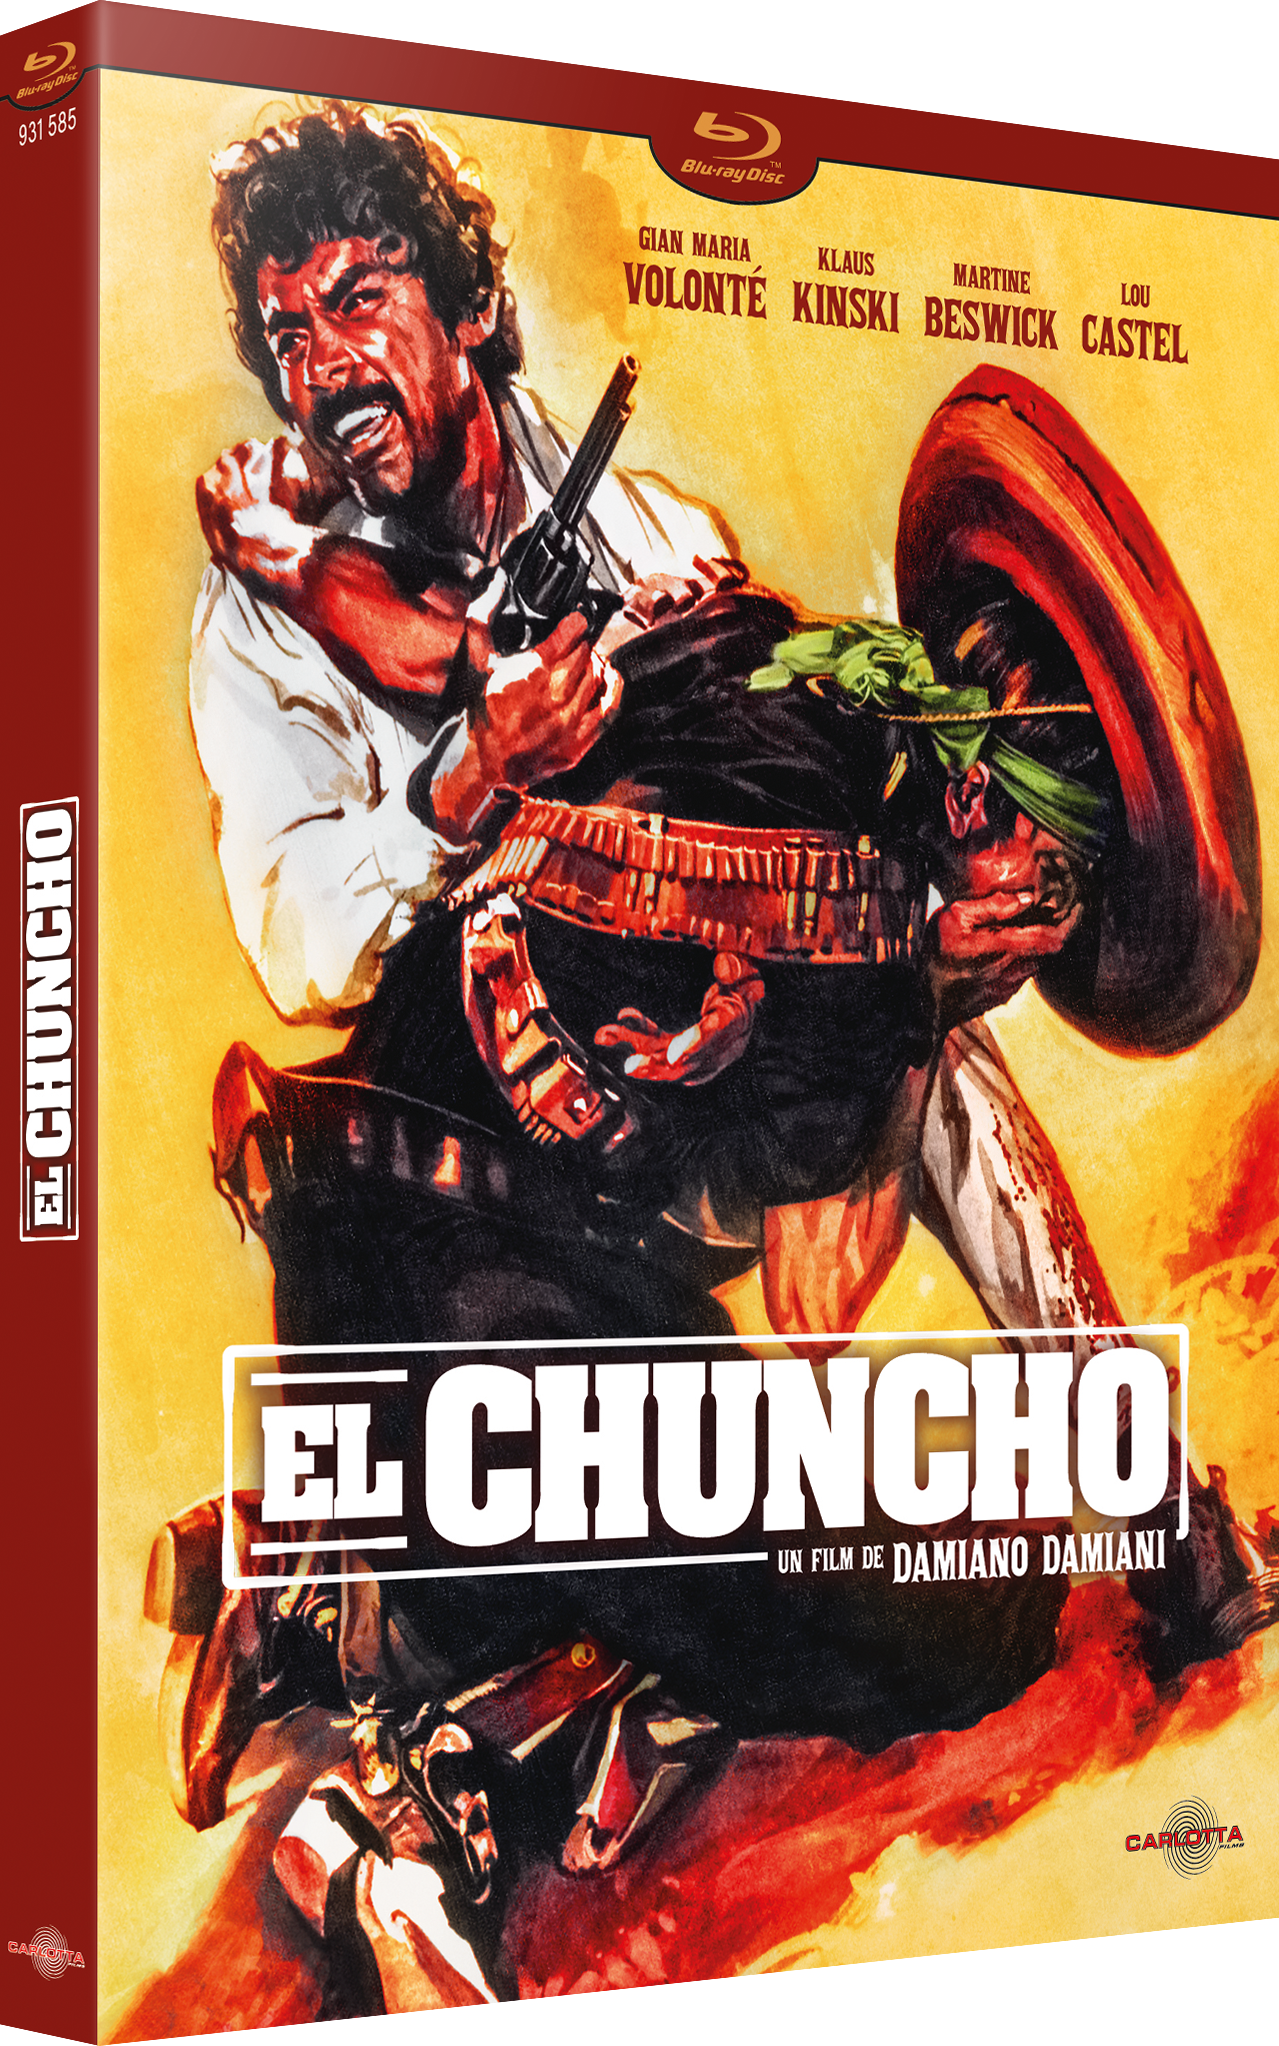 El Chuncho by Damiano Damiani